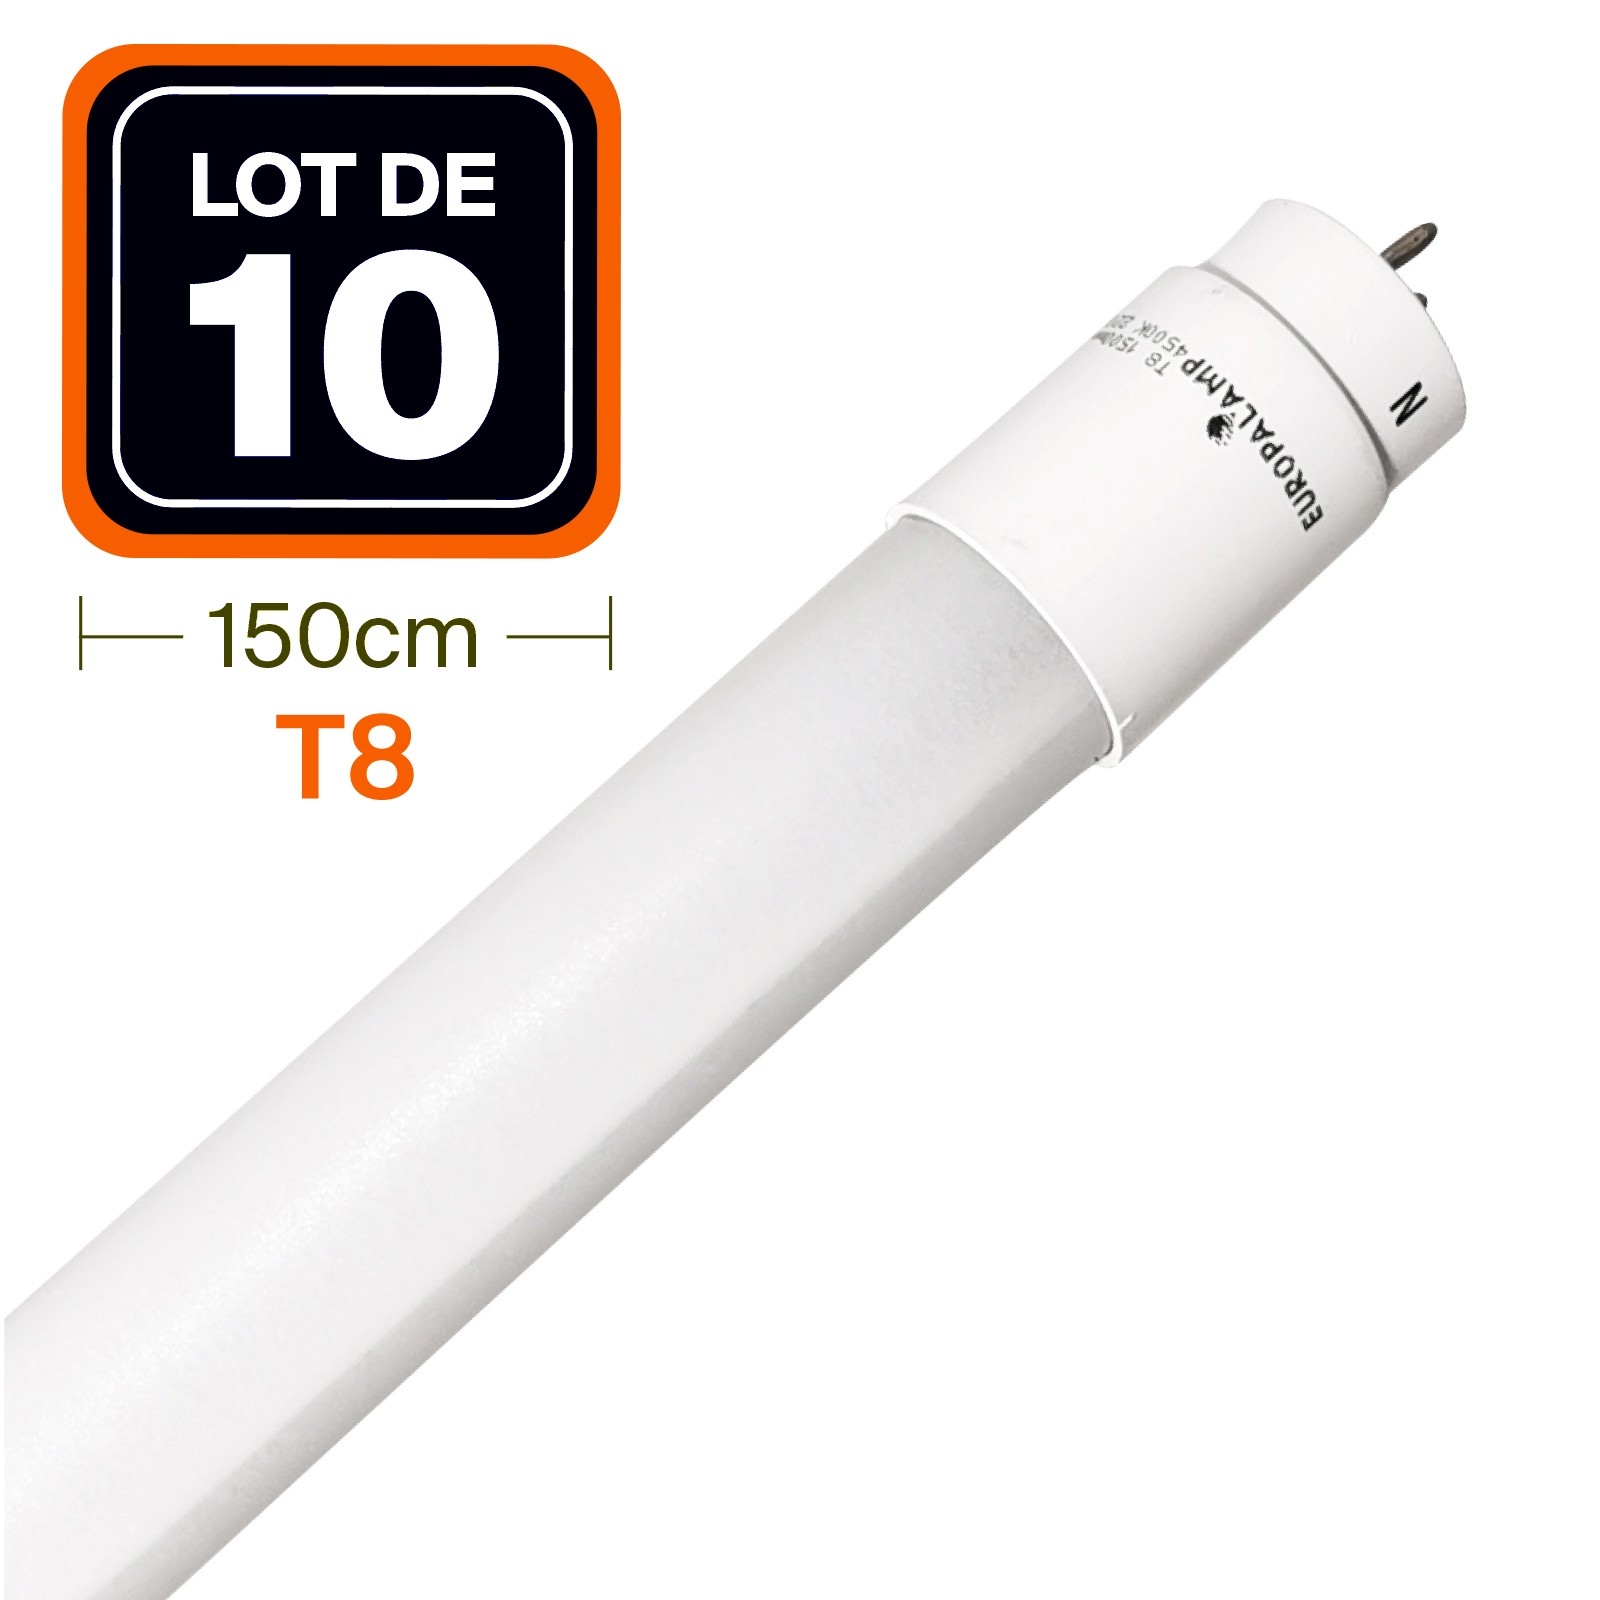 Tube LED Miidex universel pour remplacer anciens néons 120 ou 150cm -  Lum&smart-pro